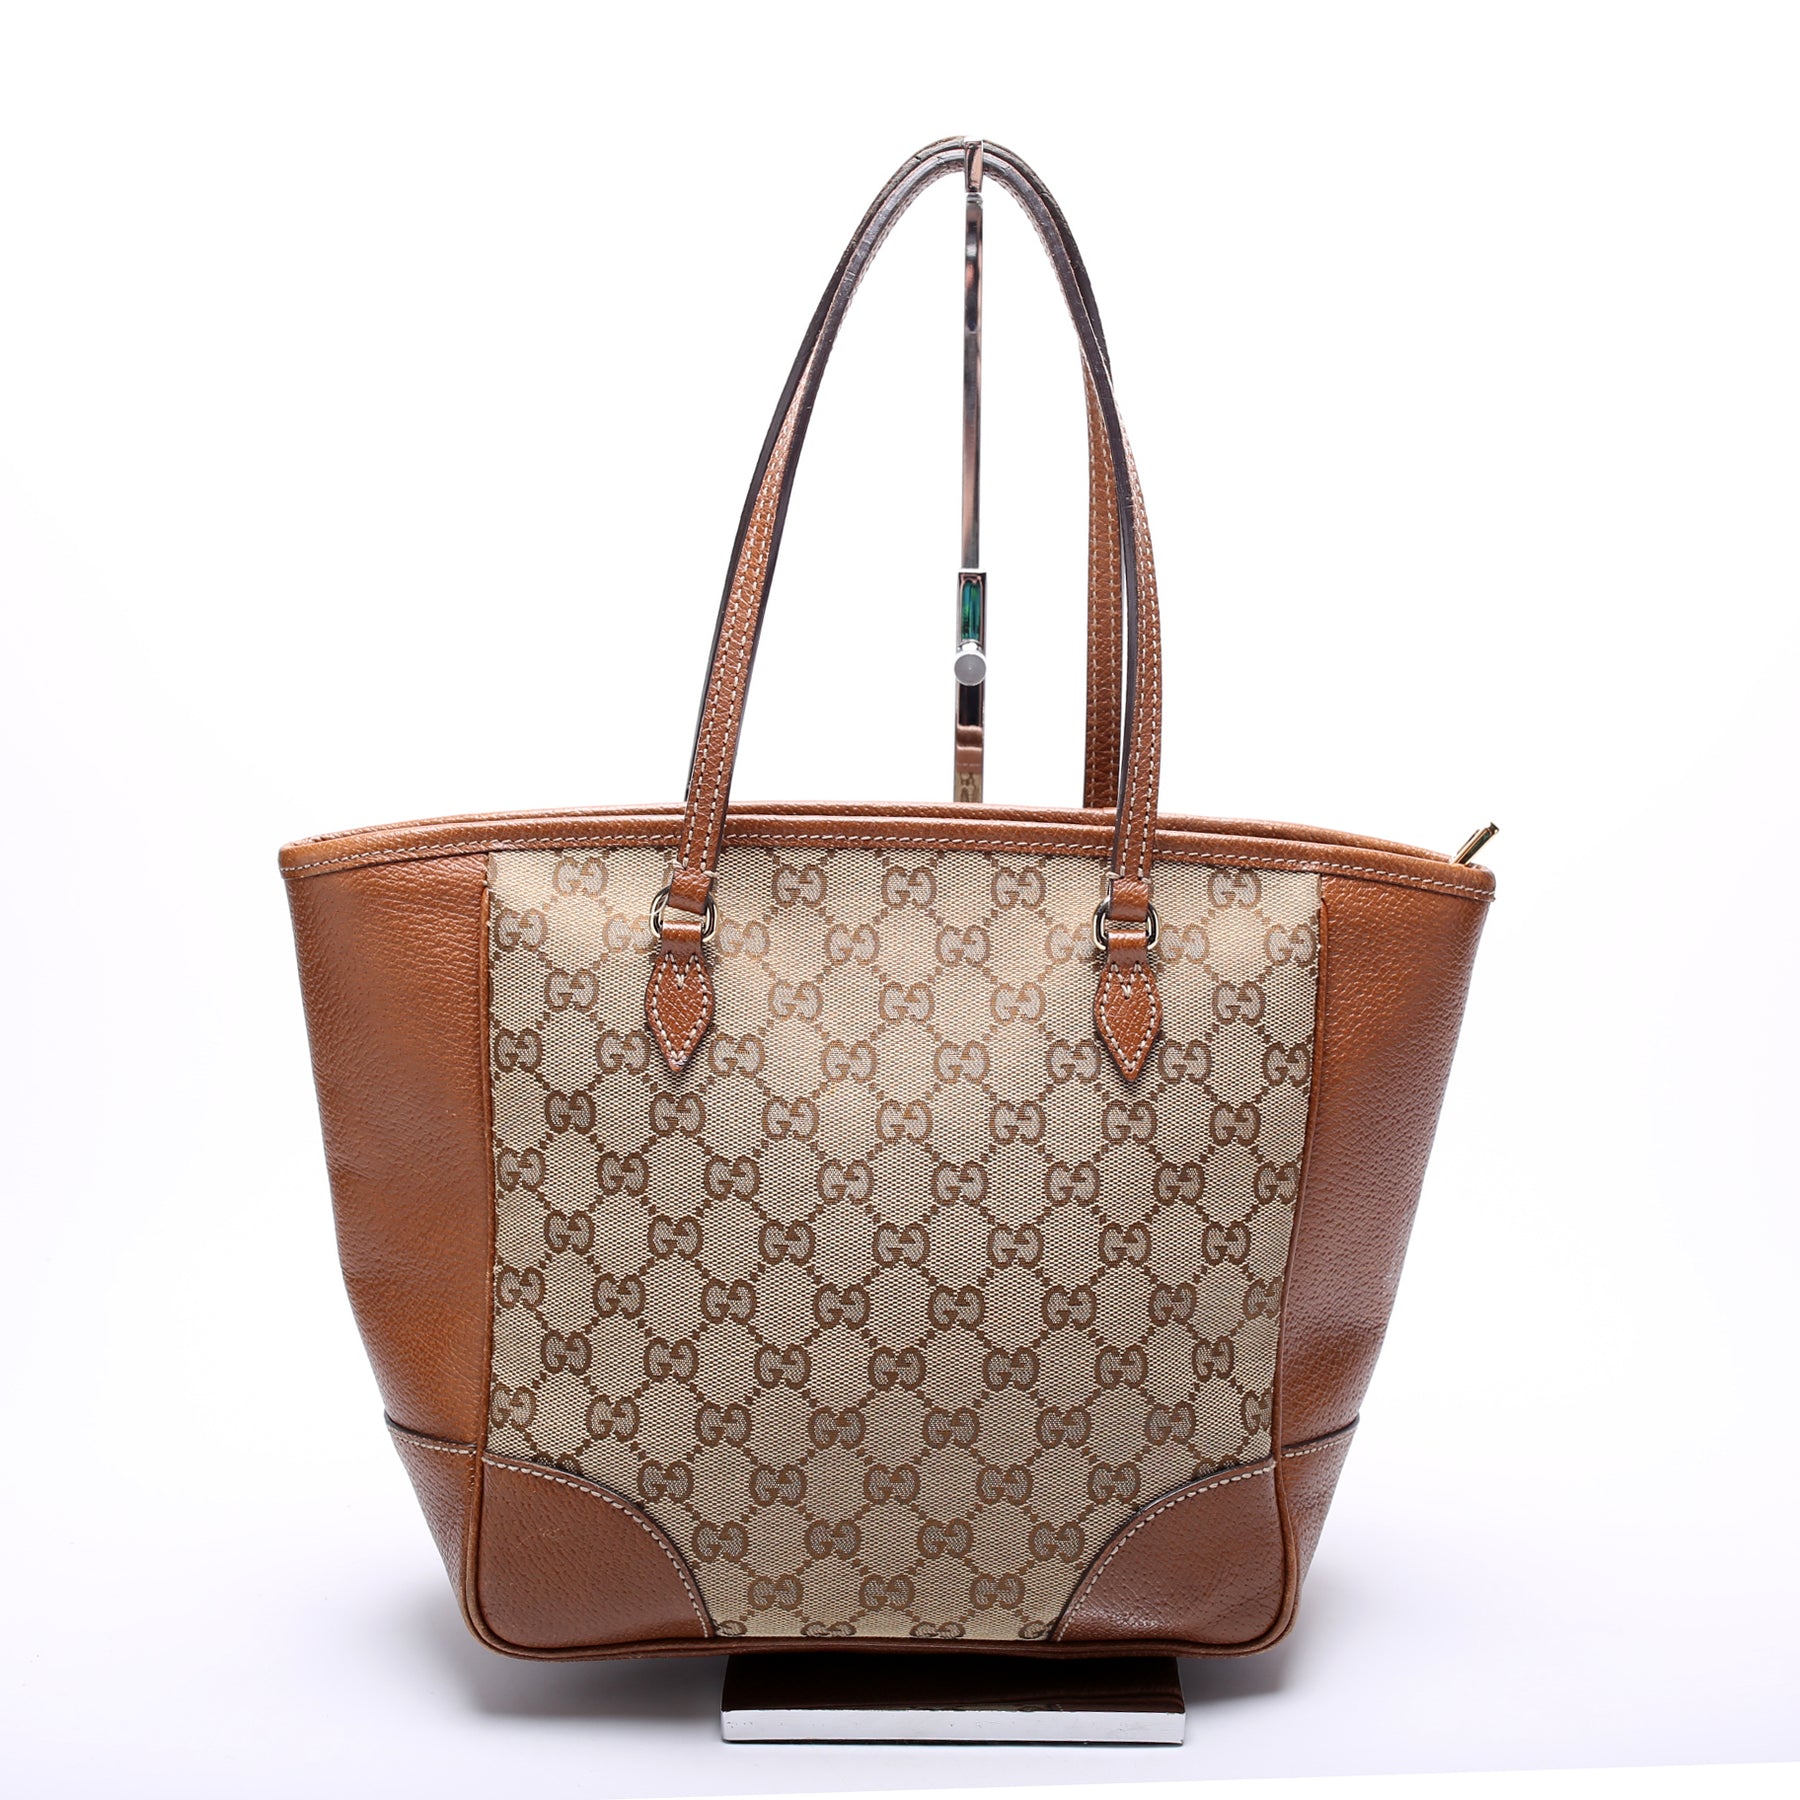 Gucci Bree Small GG Canvas Tote Bag, Brown